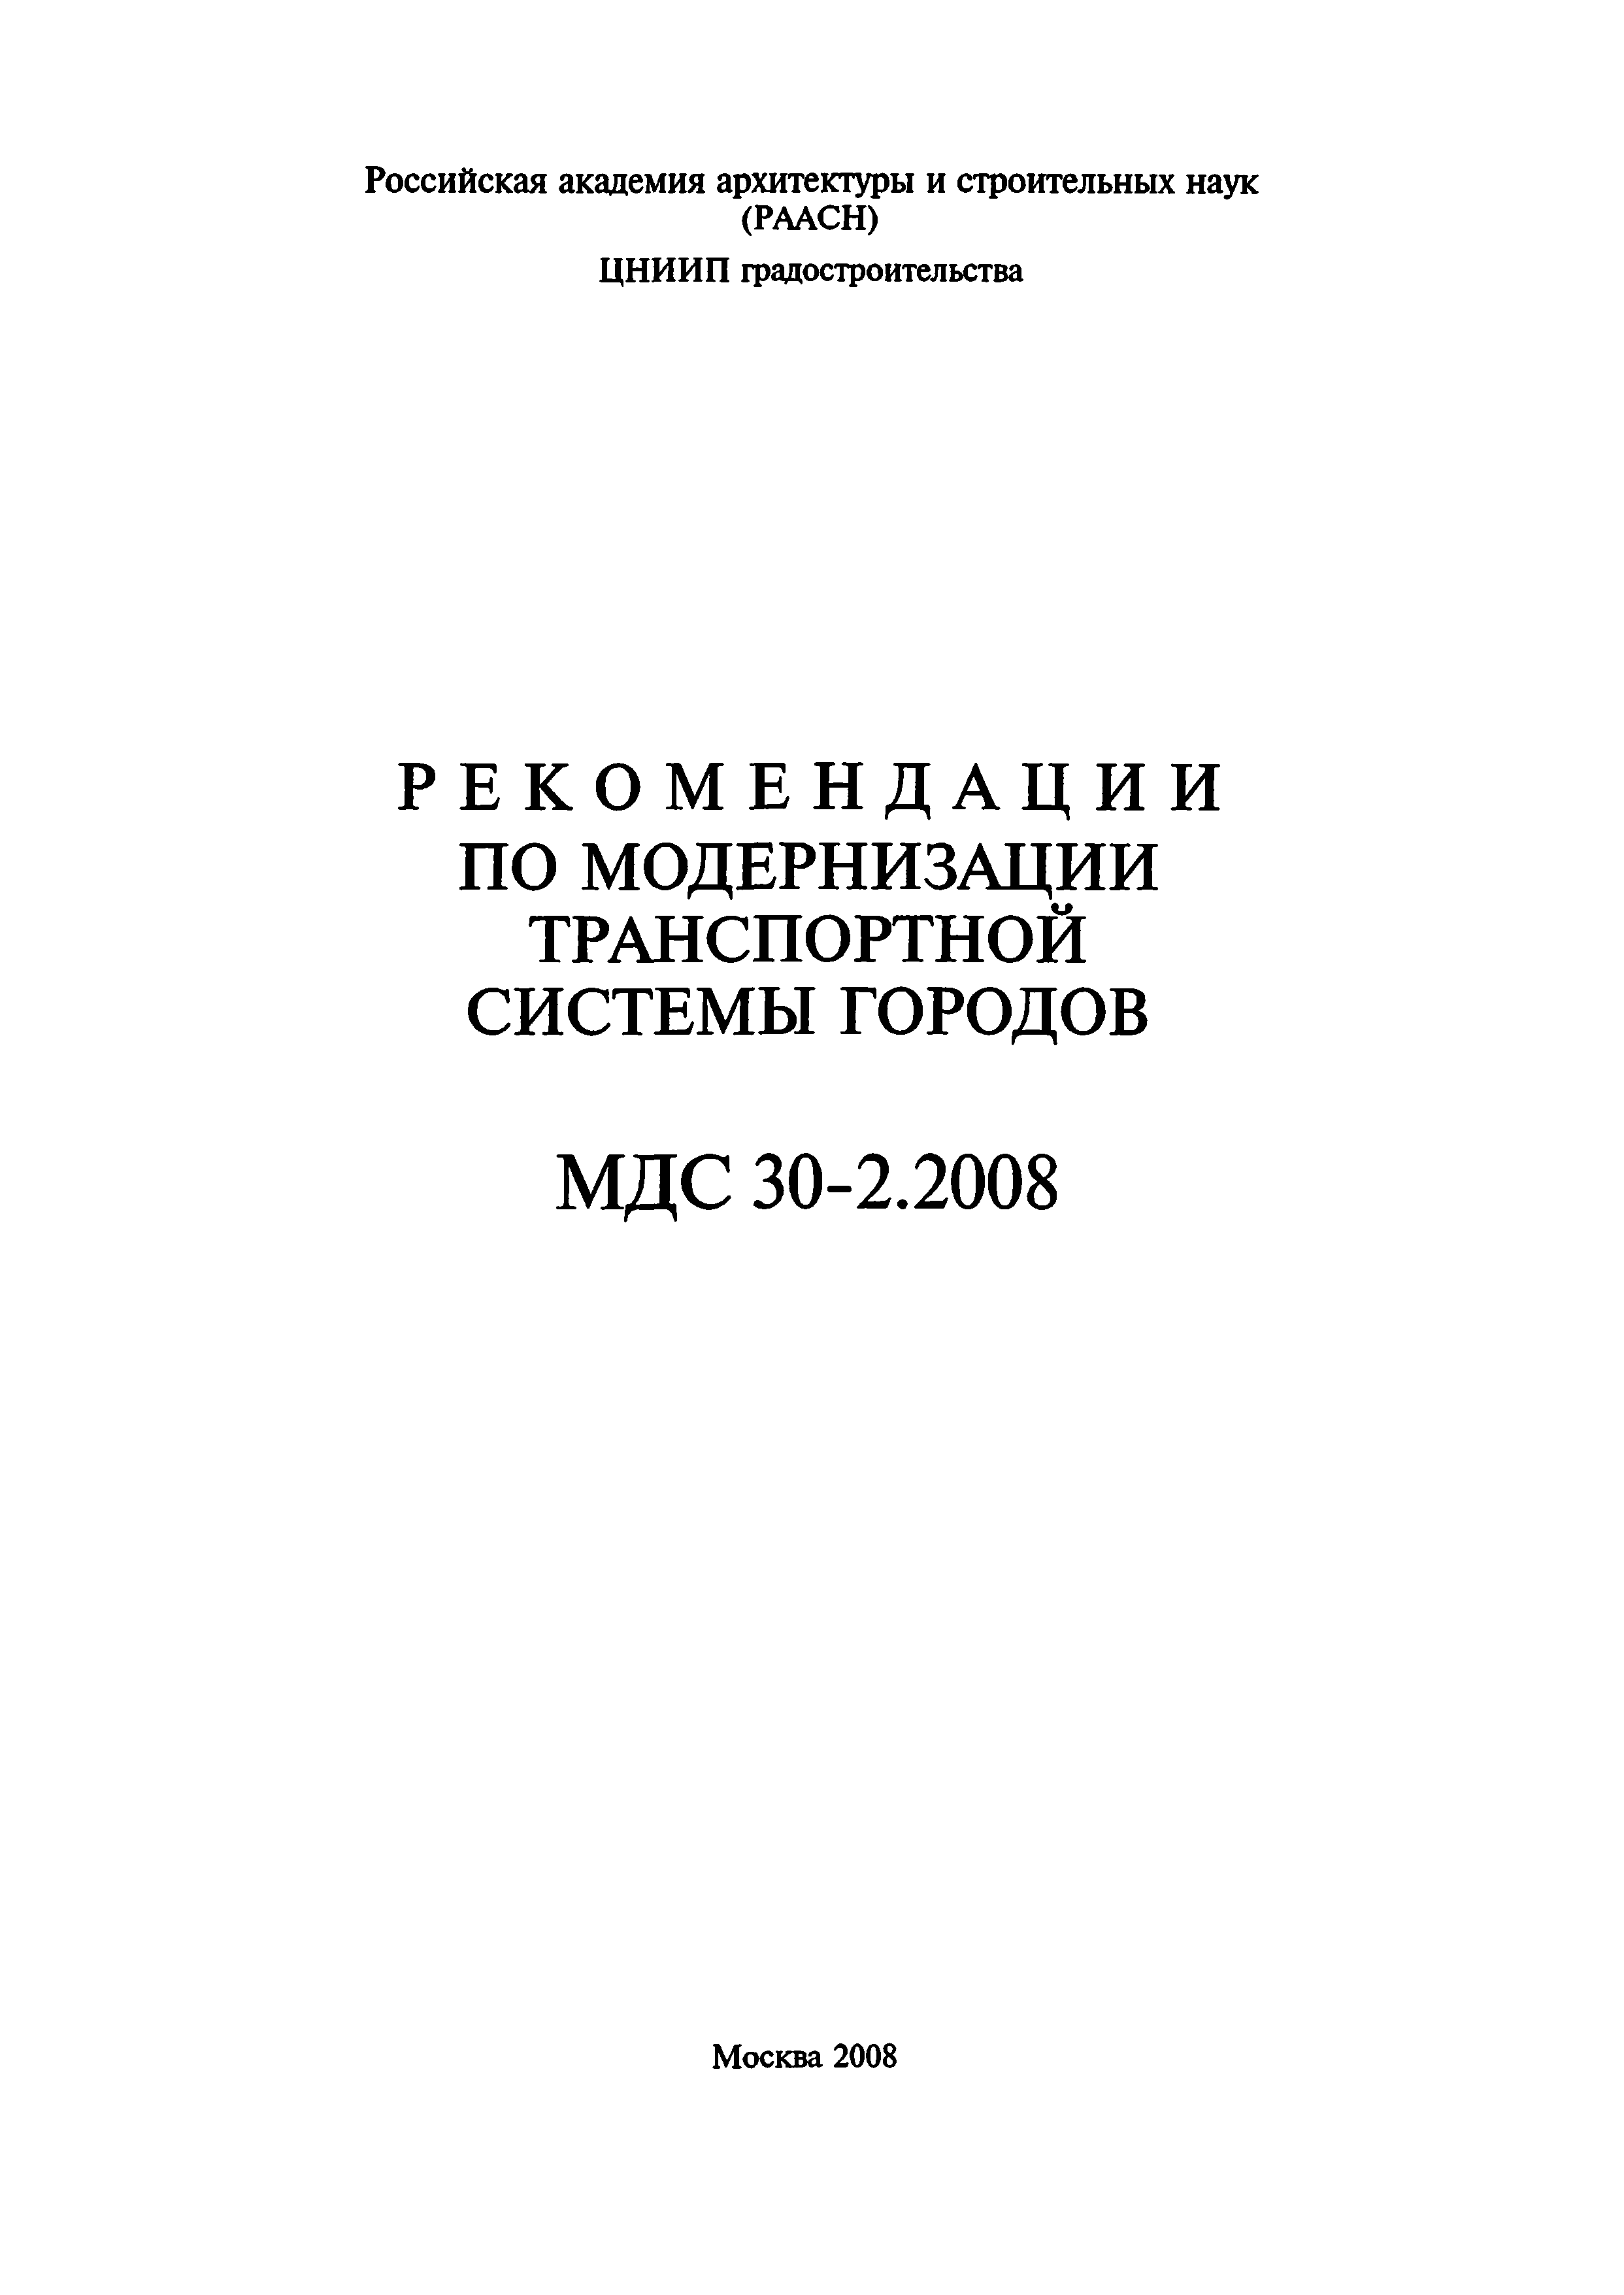 МДС 30-2.2008